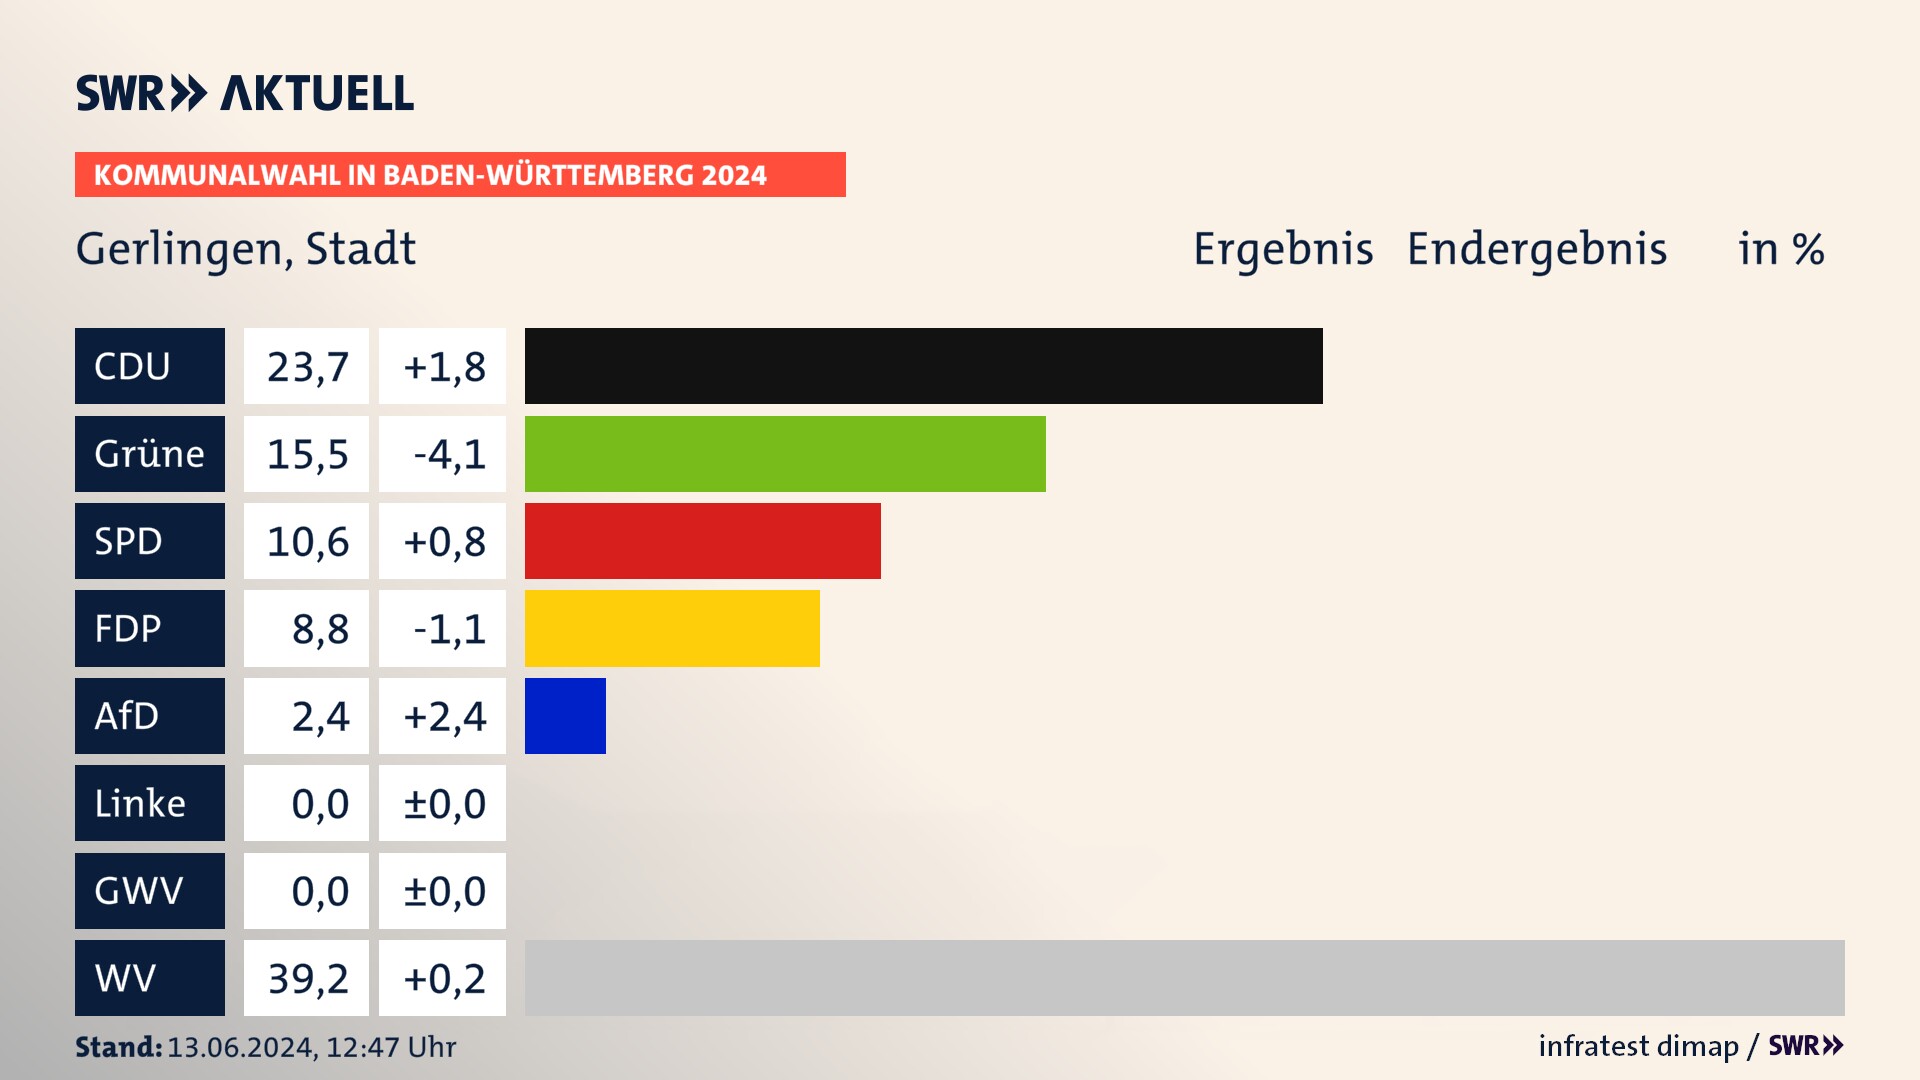 Kommunalwahl 2024 Endergebnis Zweitstimme für Gerlingen. In Gerlingen, Stadt erzielt die CDU 23,7 Prozent der gültigen  Stimmen. Die Grünen landen bei 15,5 Prozent. Die SPD erreicht 10,6 Prozent. Die FDP kommt auf 8,8 Prozent. Die AfD landet bei 2,4 Prozent. Die Wählervereinigungen erreichen 39,2 Prozent.